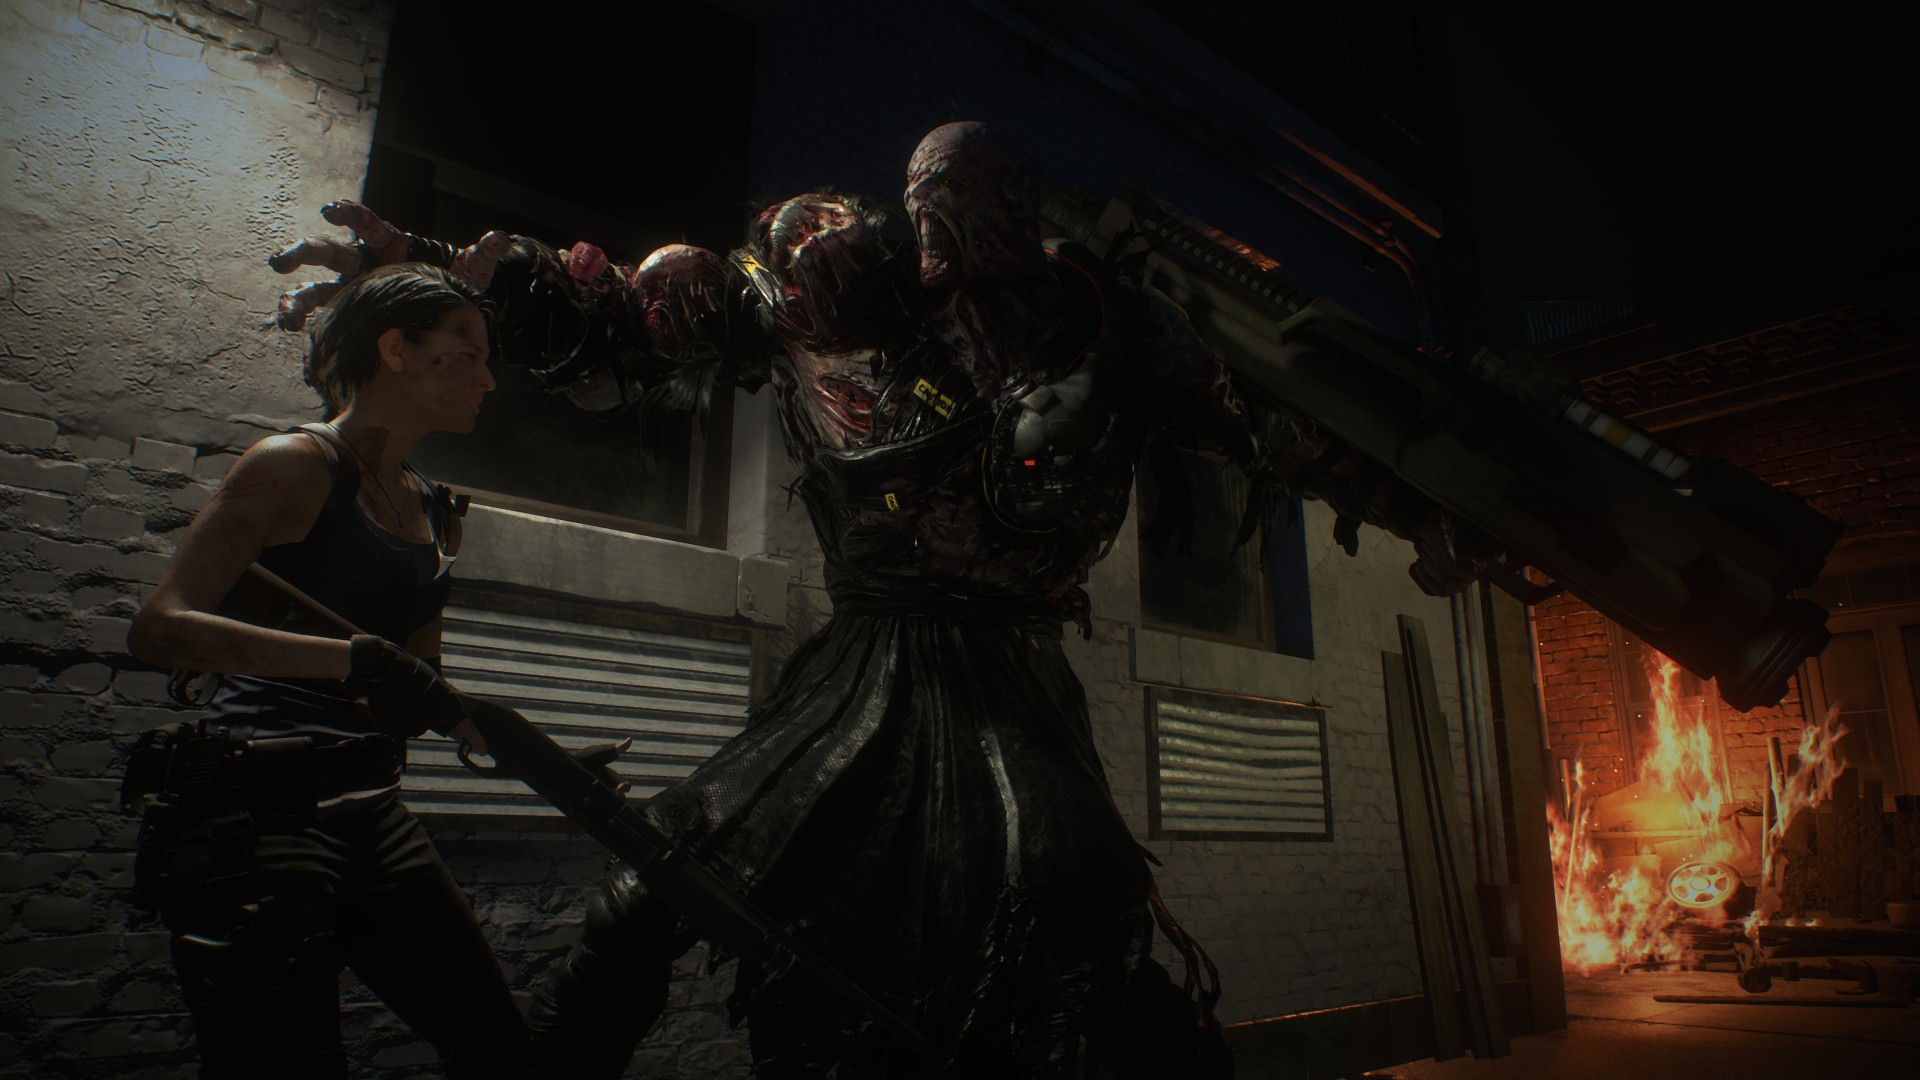 49382052712 4f5ab9b4e0 k - Neuer Resident Evil 3 Trailer präsentiert das monströse Makeover von Nemesis